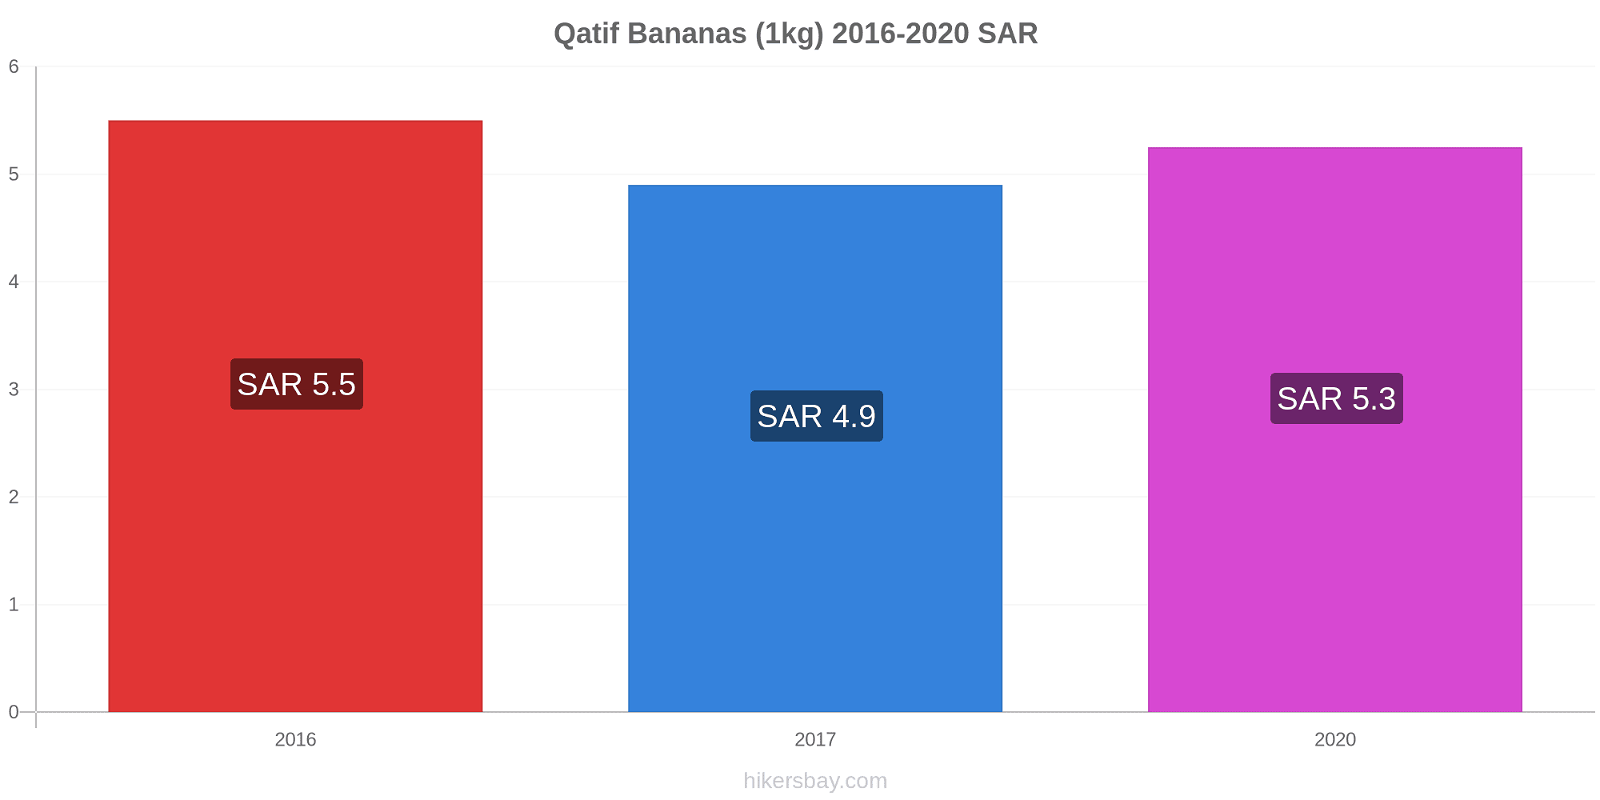 Qatif variação de preço Banana (1kg) hikersbay.com